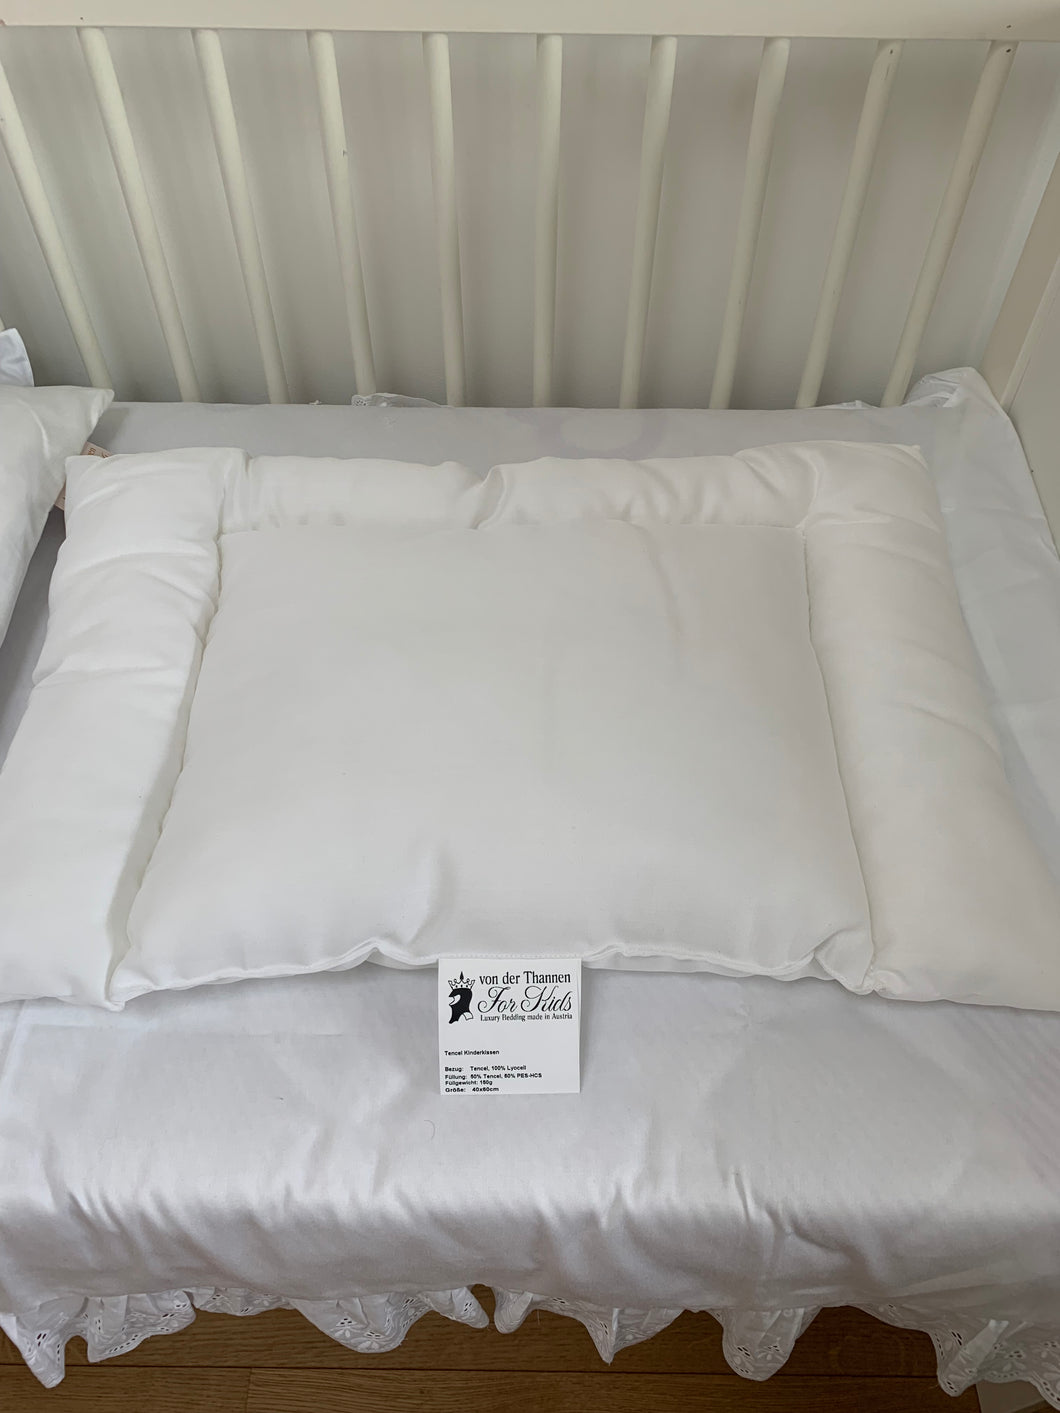 Children's pillow Clima comfort flat 40x60 cm